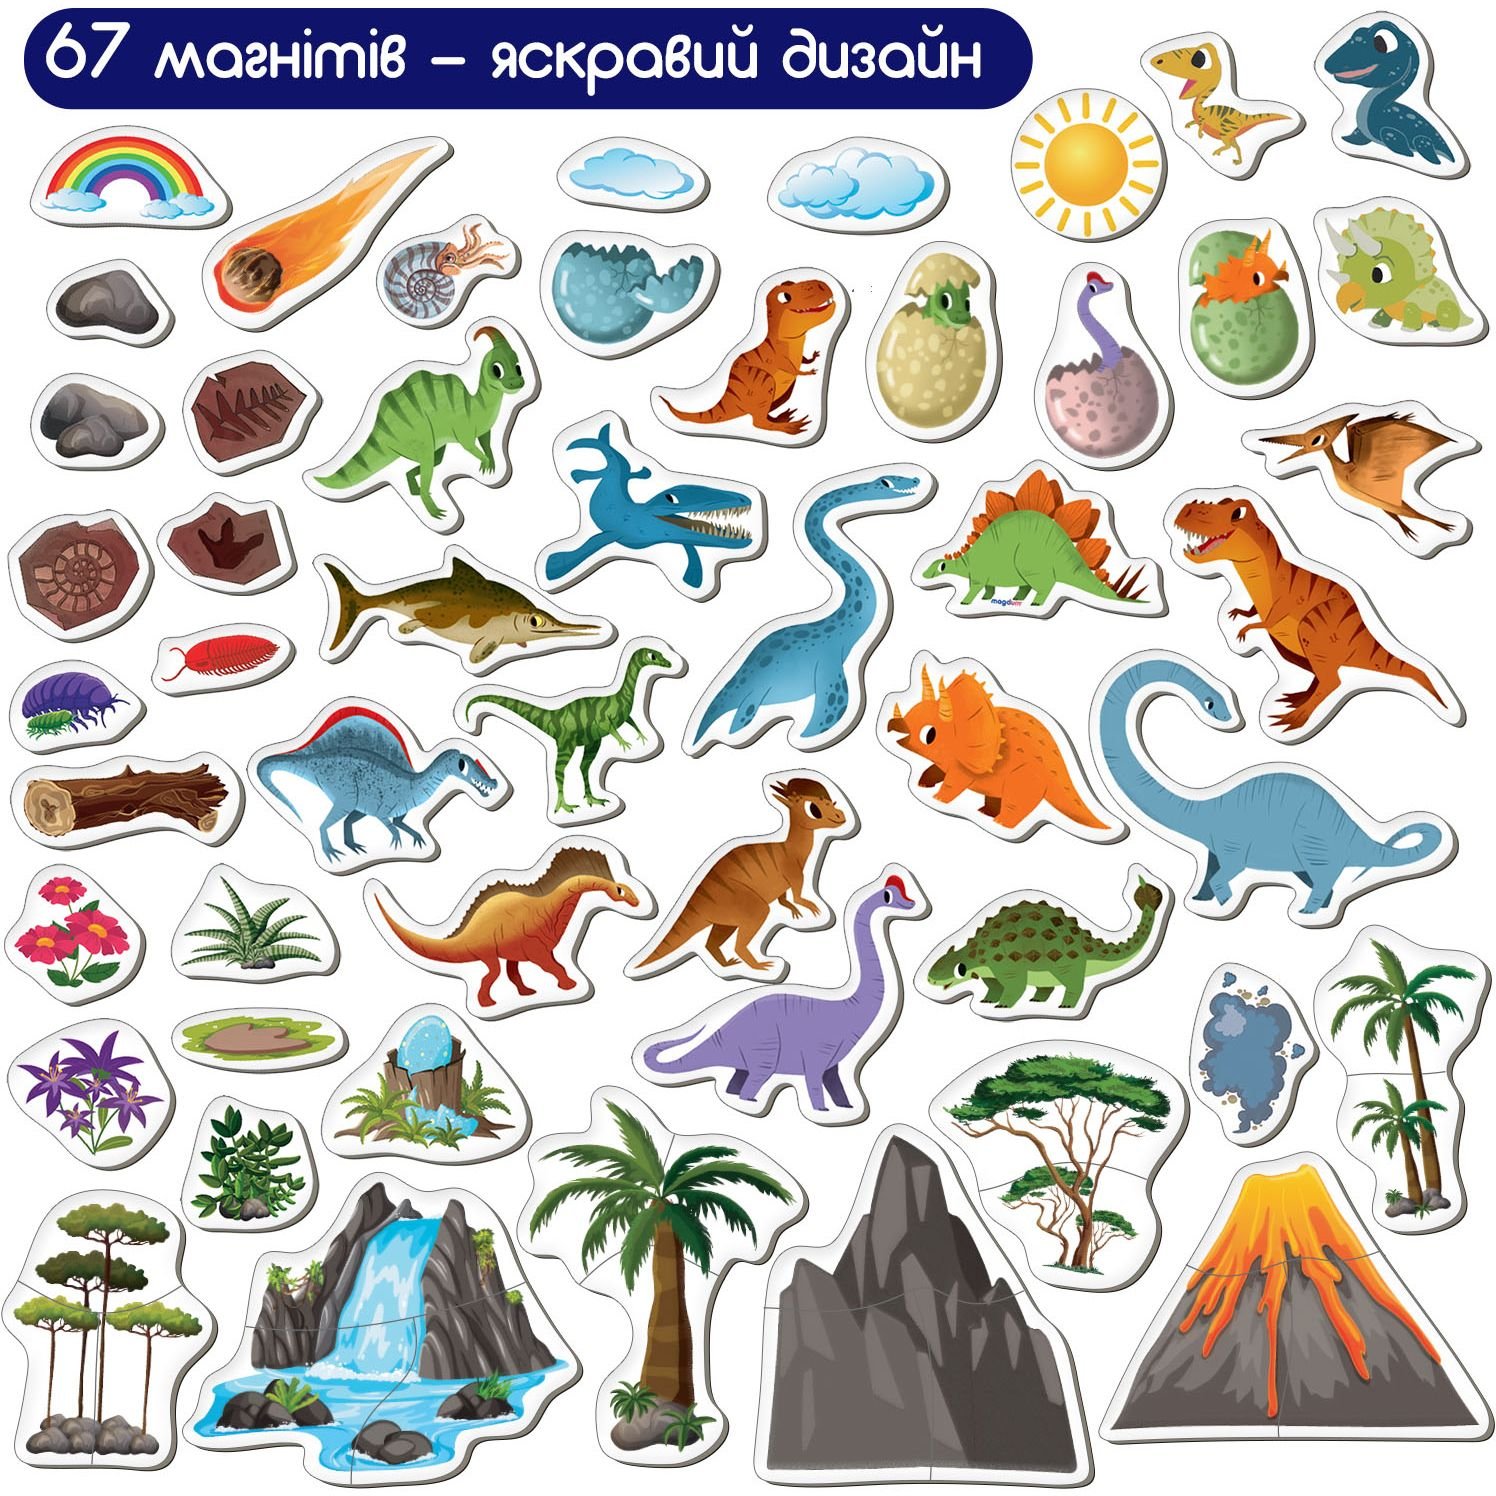 Набор магнитов Magdum Magnetic game Мир динозавров 67 шт. (ML4032-04 EN) - фото 2